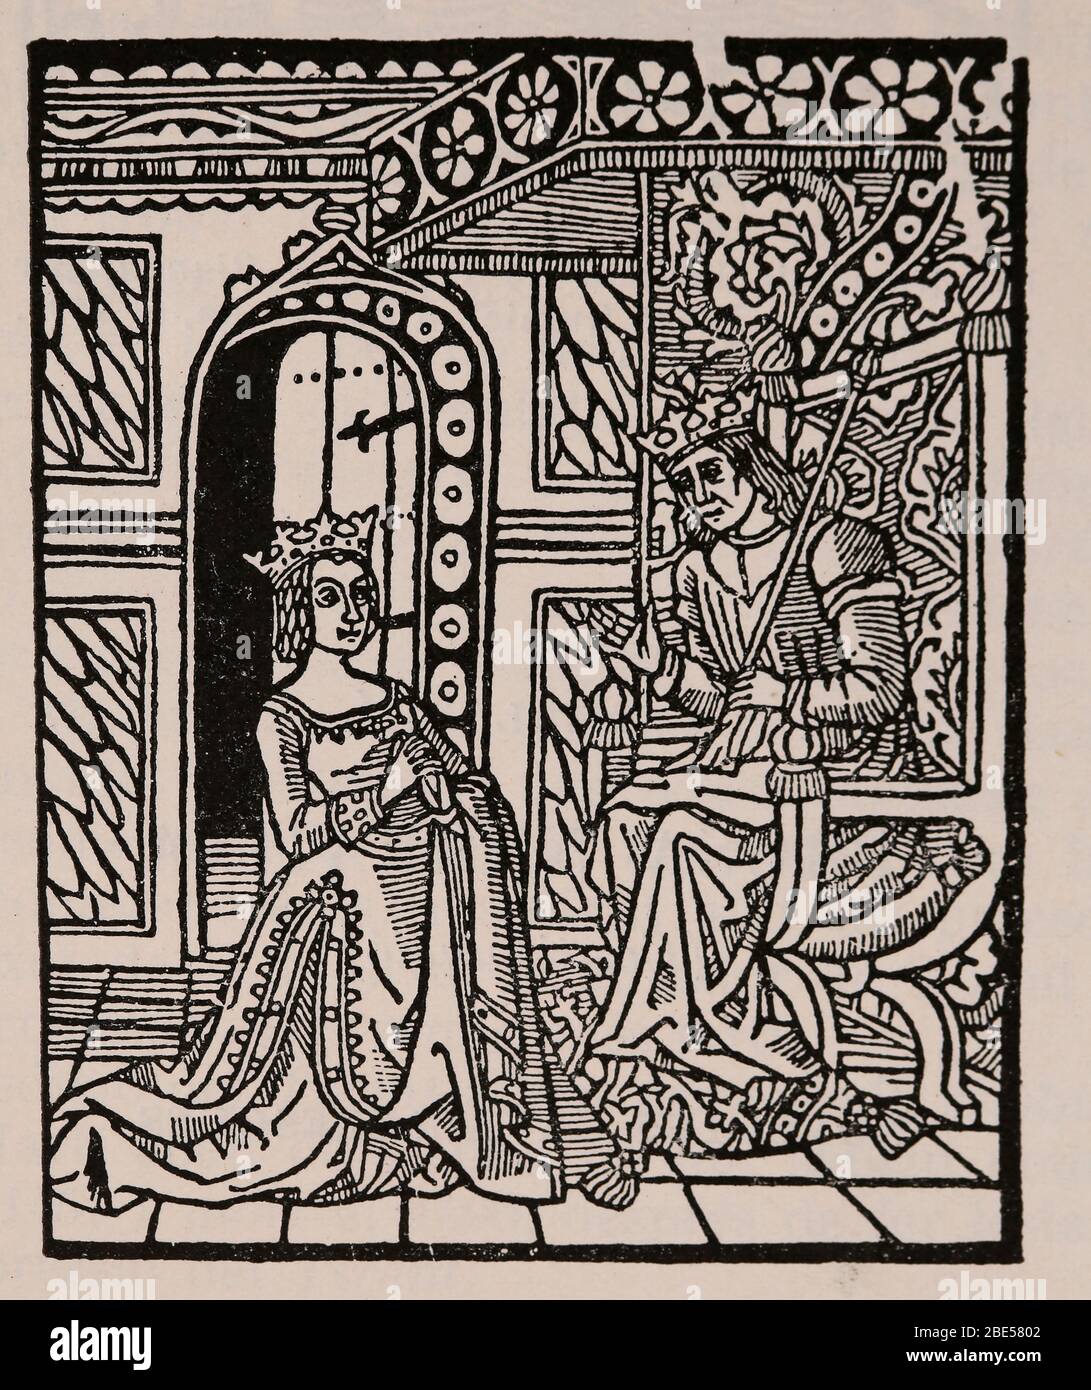 Diego de San Pedro (1437-1498). Kastilische Schriftstellerin. Das Gefängnis der Liebe. Katalanische Übersetzung, 15. Jahrhundert. Abbildung Stockfoto